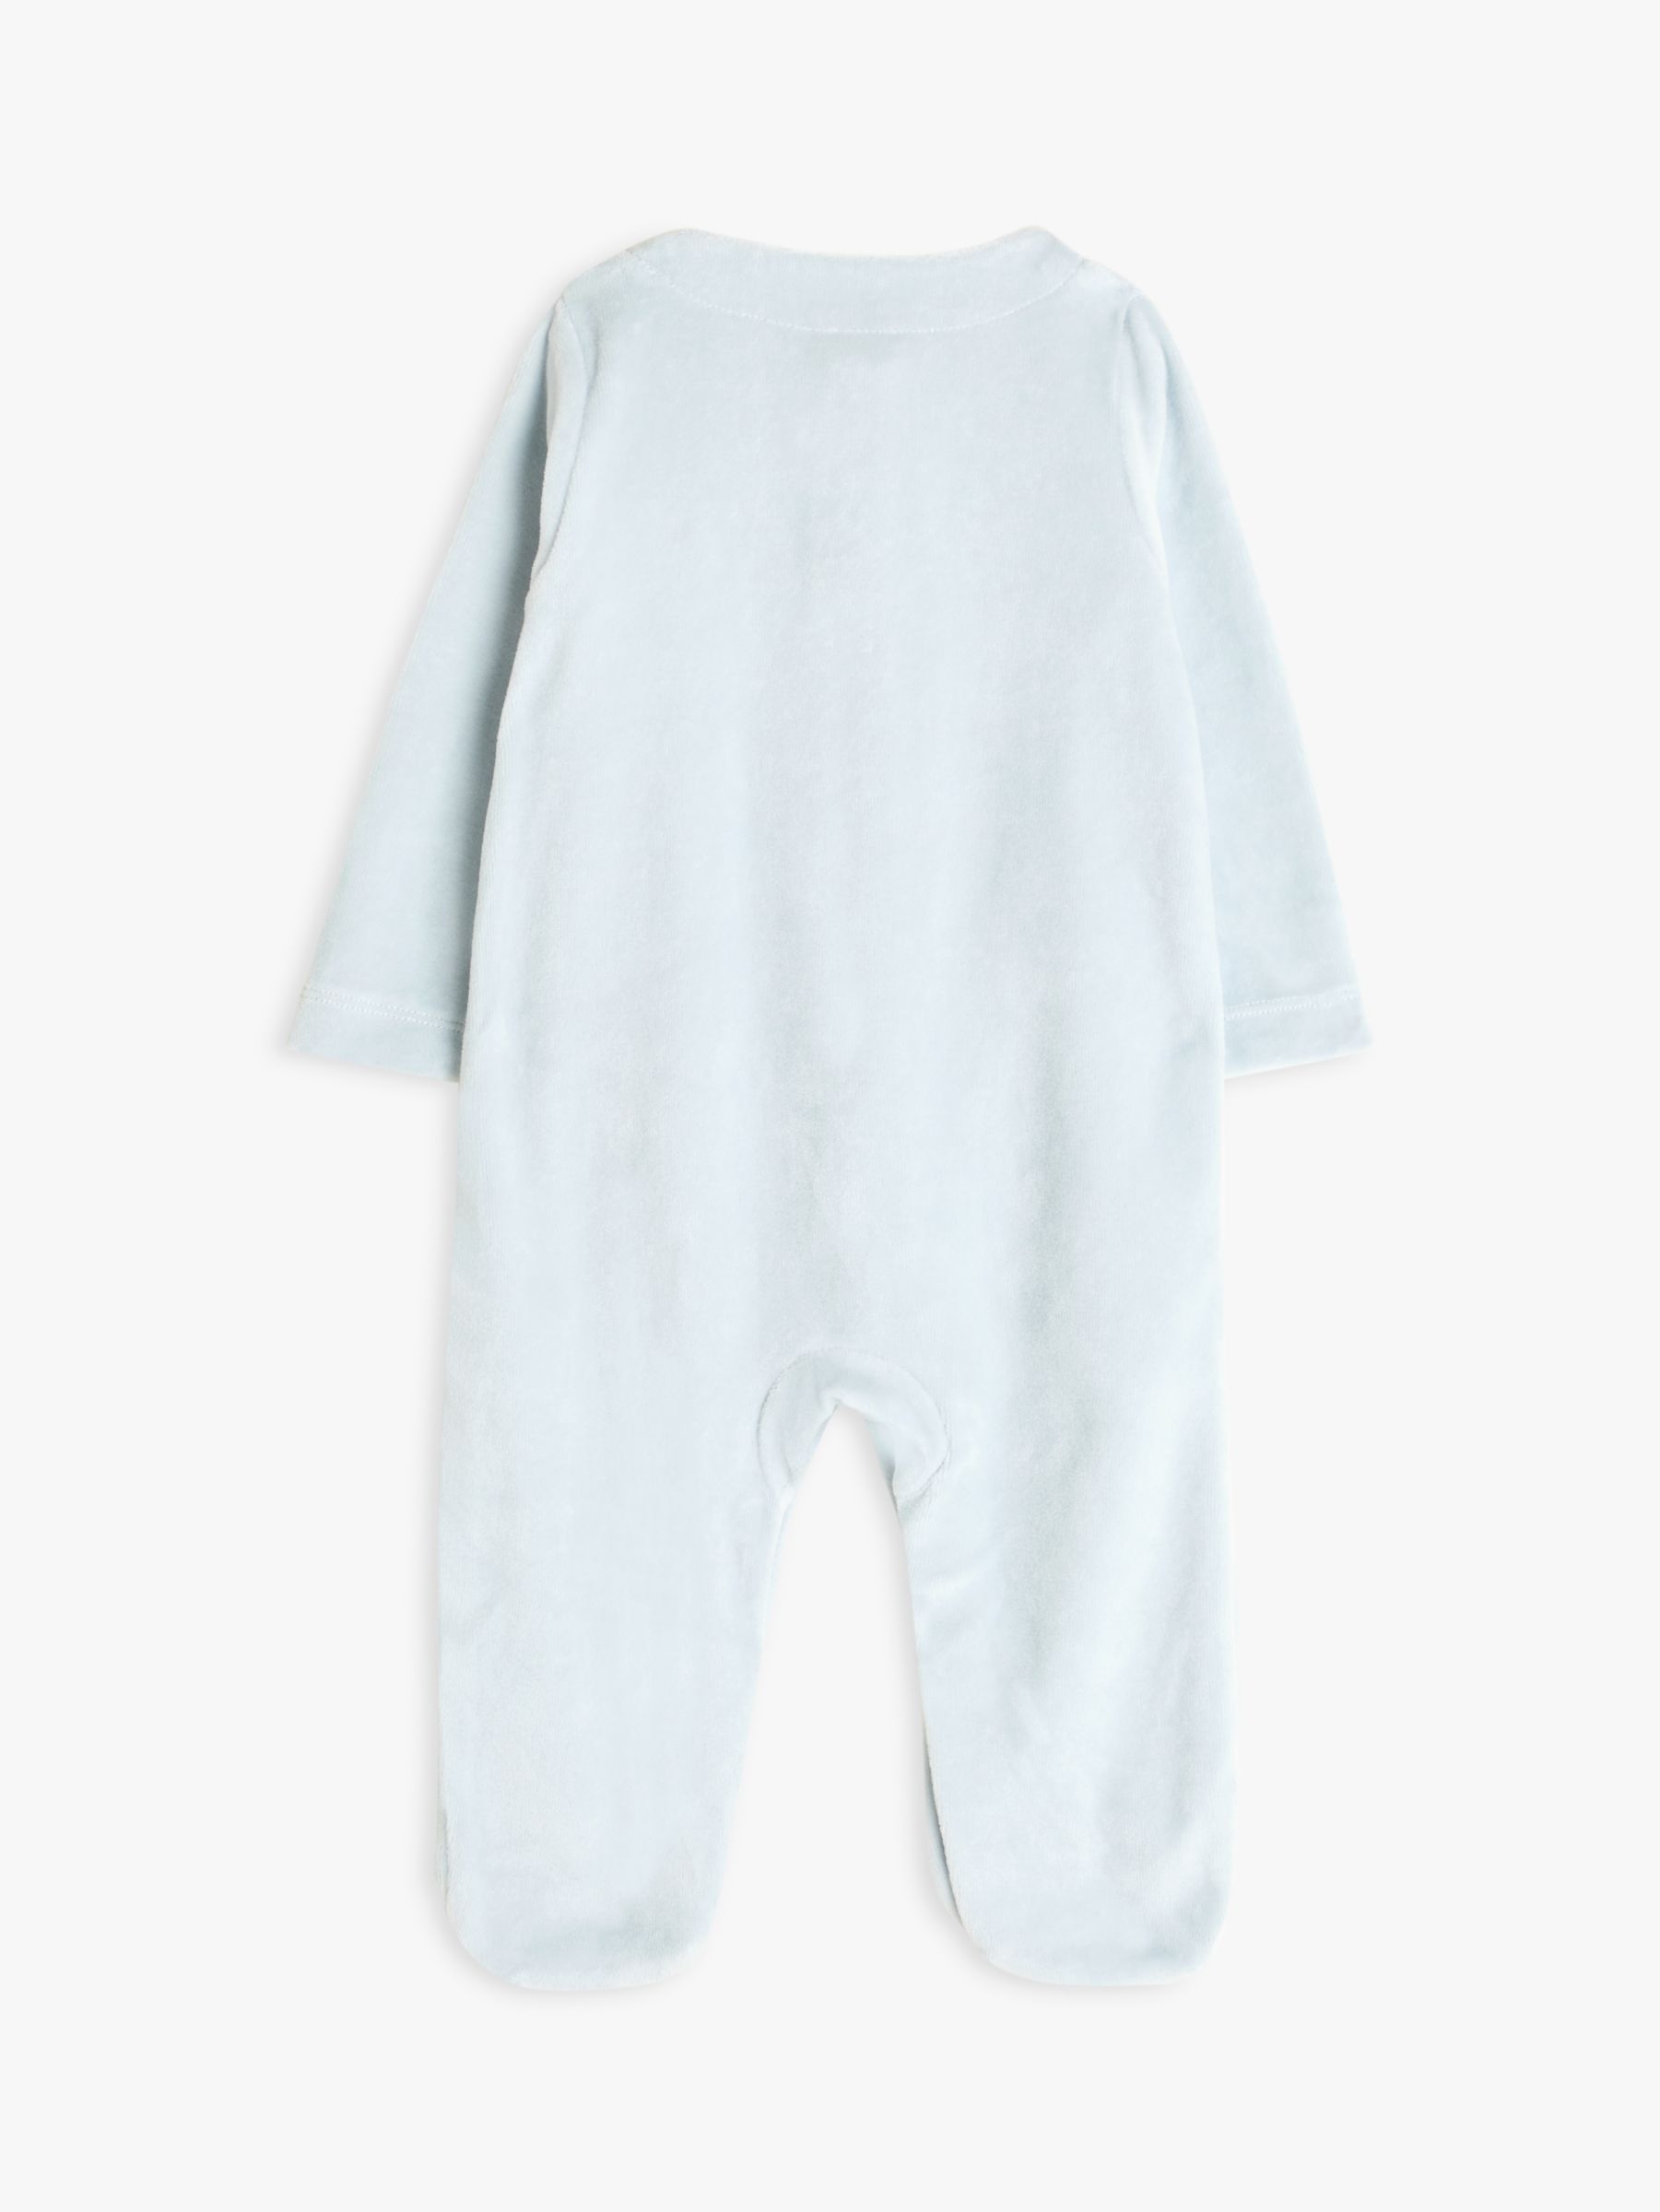 John Lewis Baby Elephant Velour Sleepsuit, Blue, Tiny Baby